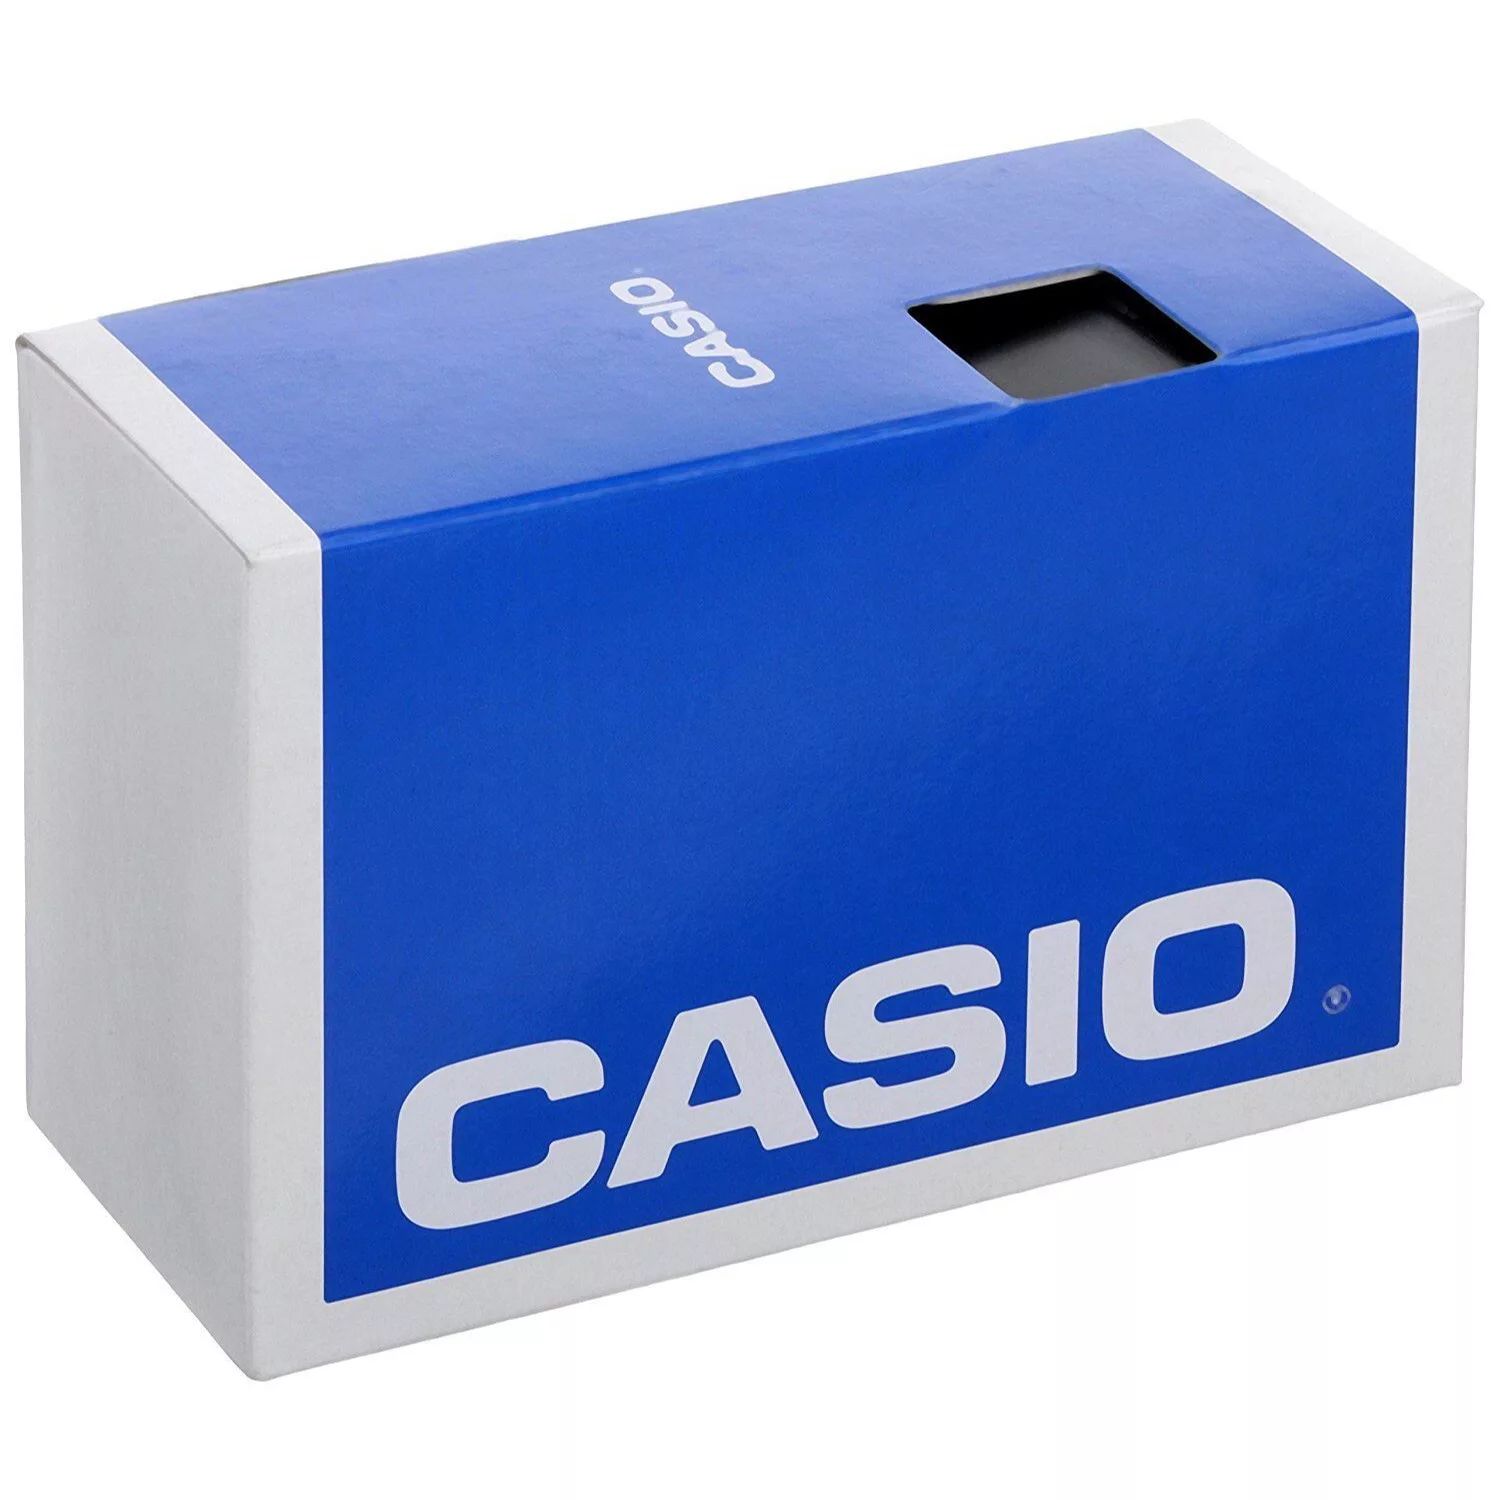 Мужские цифровые часы Casio цена и фото